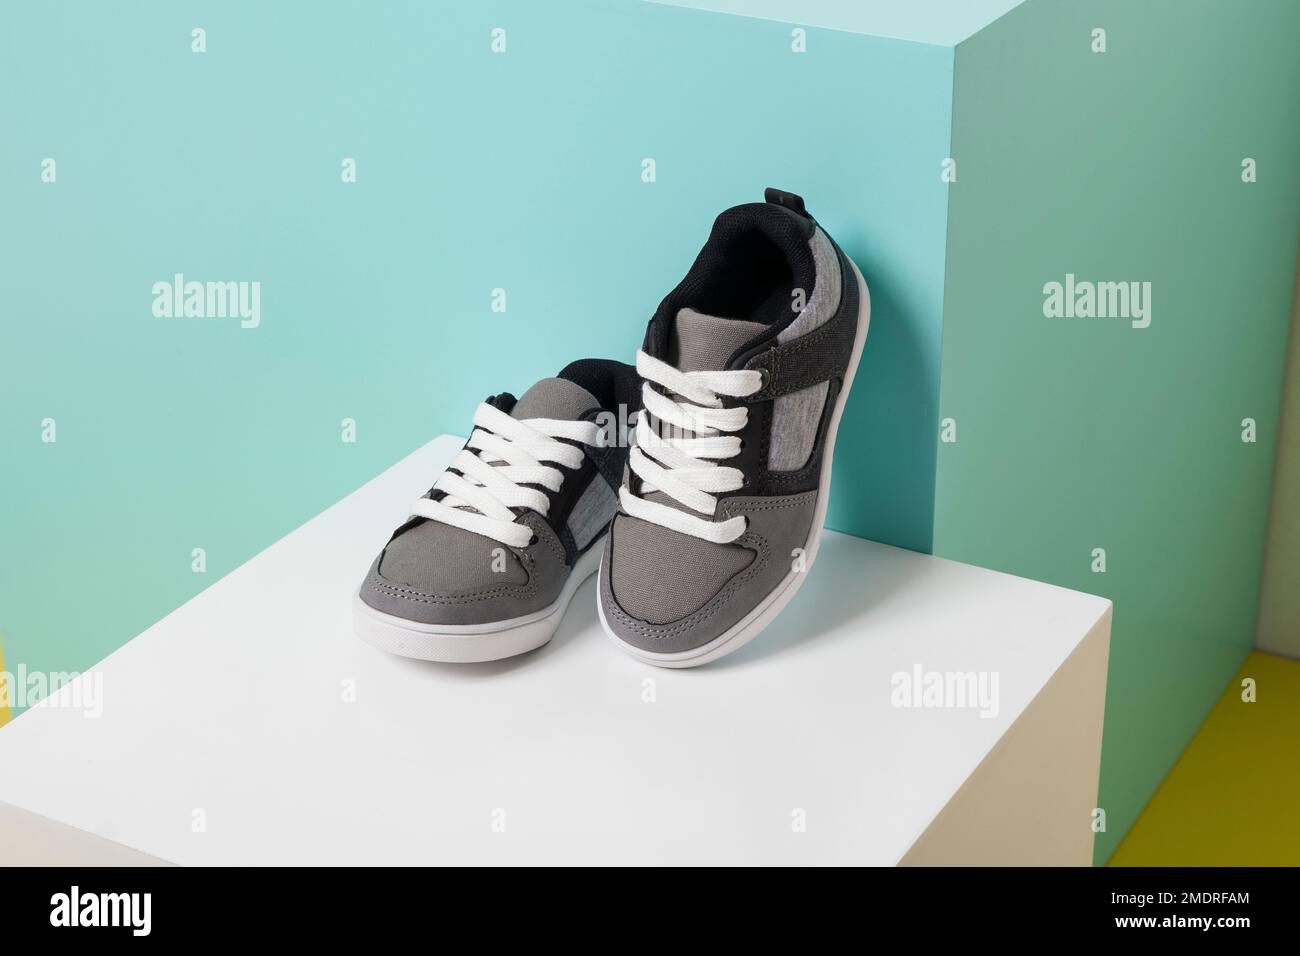 Moda para niños - zapatos deportivos Fotografía de stock - Alamy